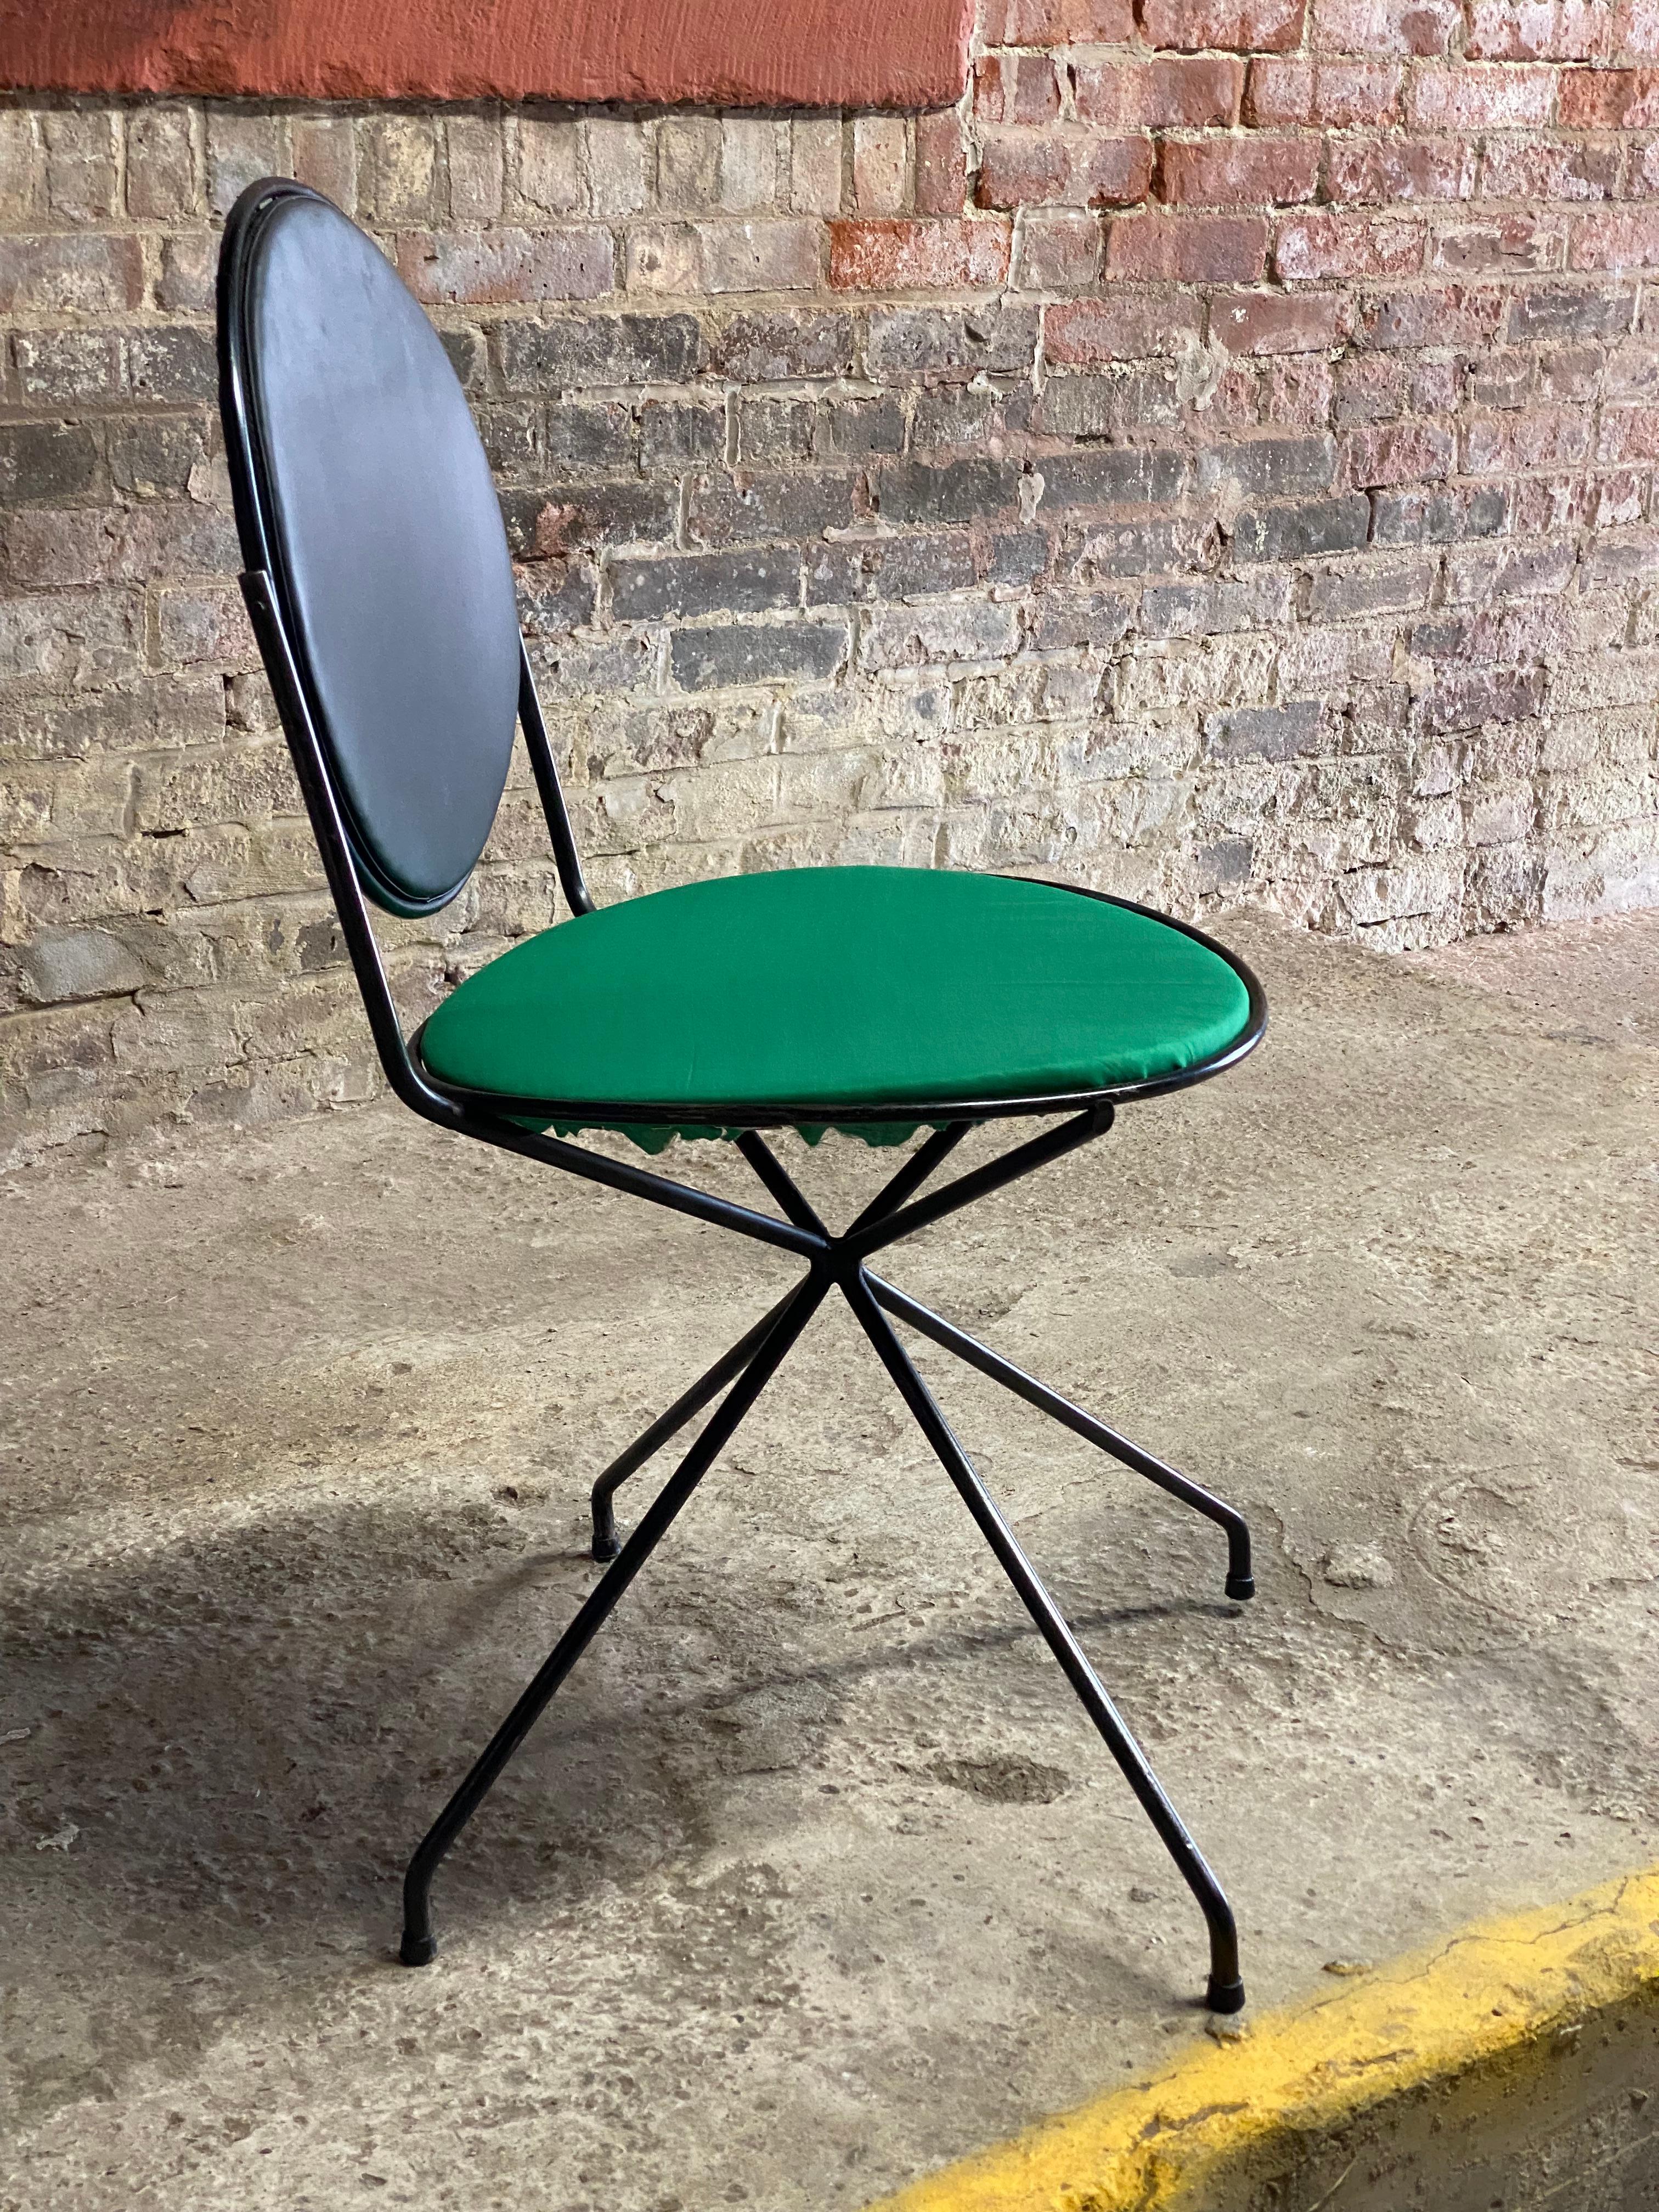 Der von Tony Paul entworfene Stuhl mit Metallgestell und kippbarer Rückenlehne. Schwarzer Metallrahmen mit Rückenlehne aus Metalldrahtgeflecht, gepolstert mit schwarzem Original-Vinyl und einem aufgefrischten kellygrünen Stoffsitz. Stationärer Sitz